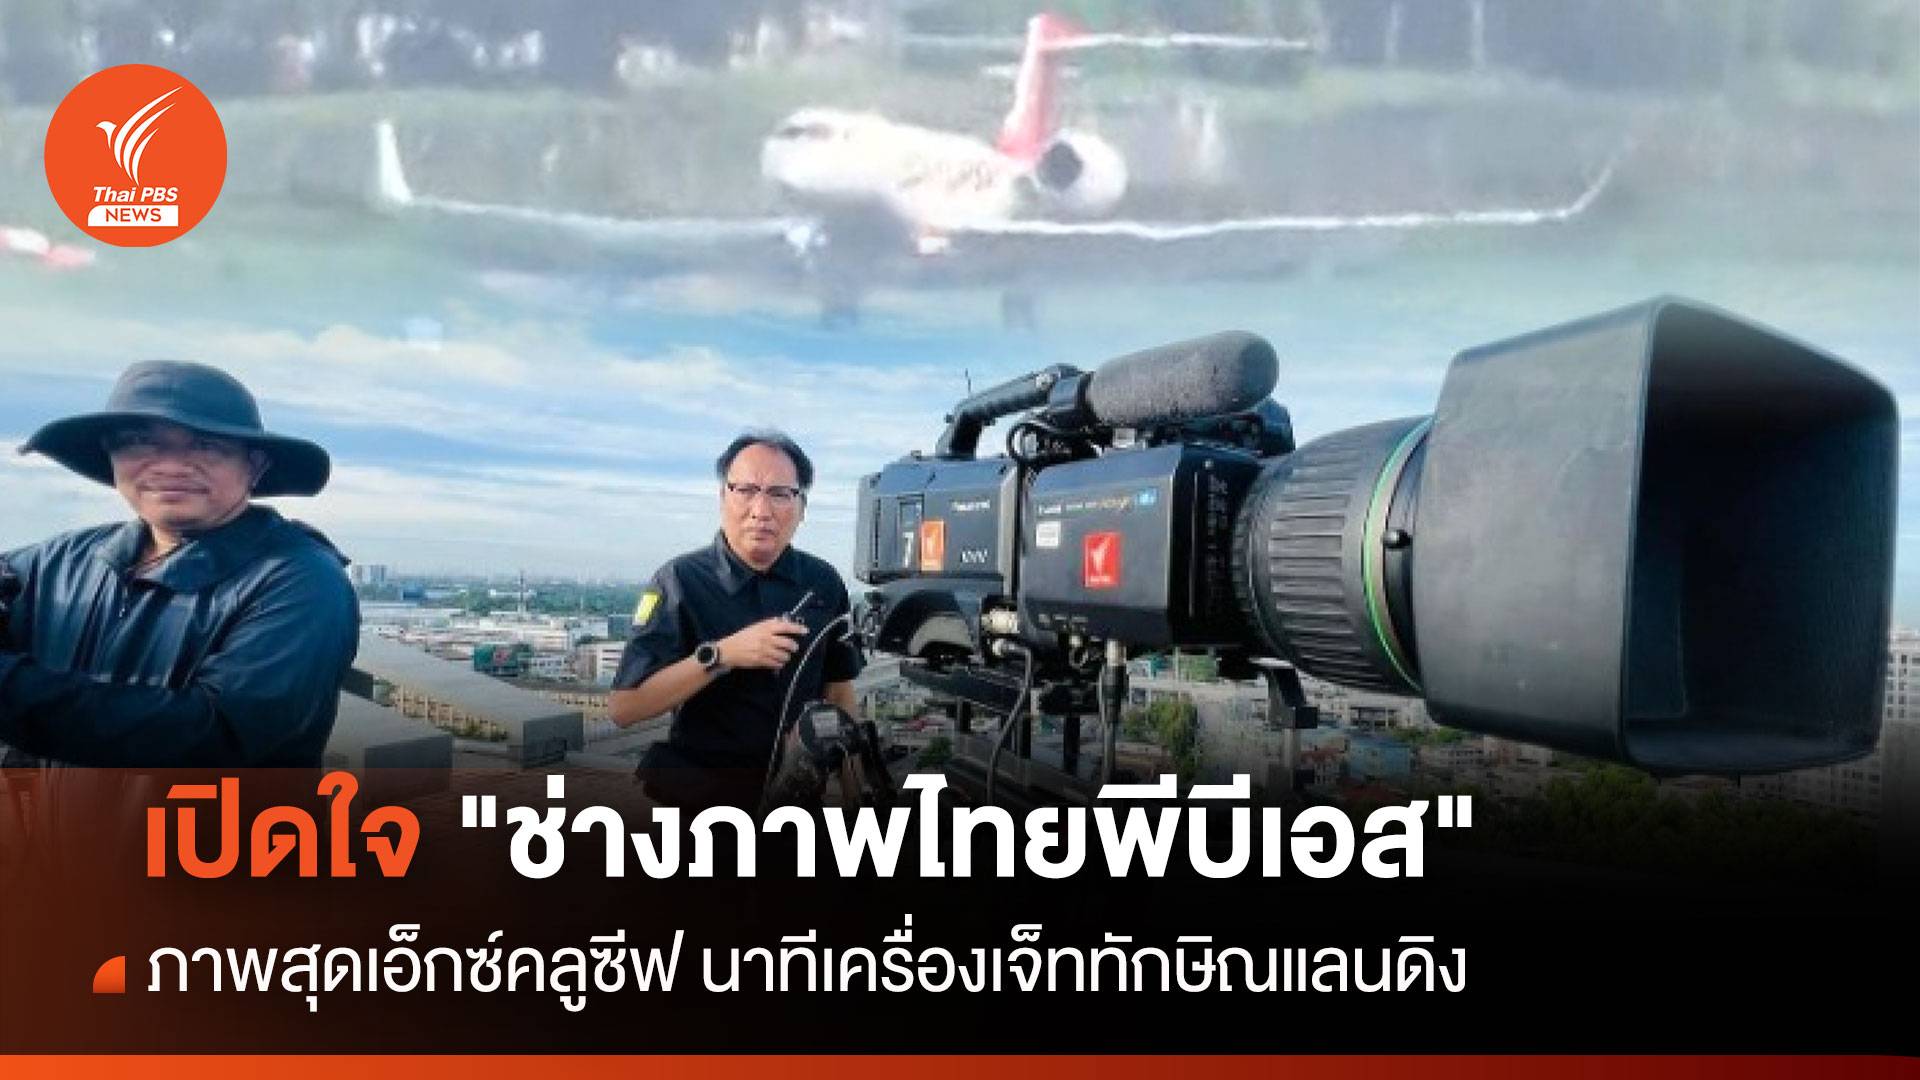 เปิดใจ "ช่างภาพไทยพีบีเอส" กับภาพสุดเอ็กซ์คลูซีฟ เครื่องบินทักษิณแตะรันเวย์ดอนเมือง